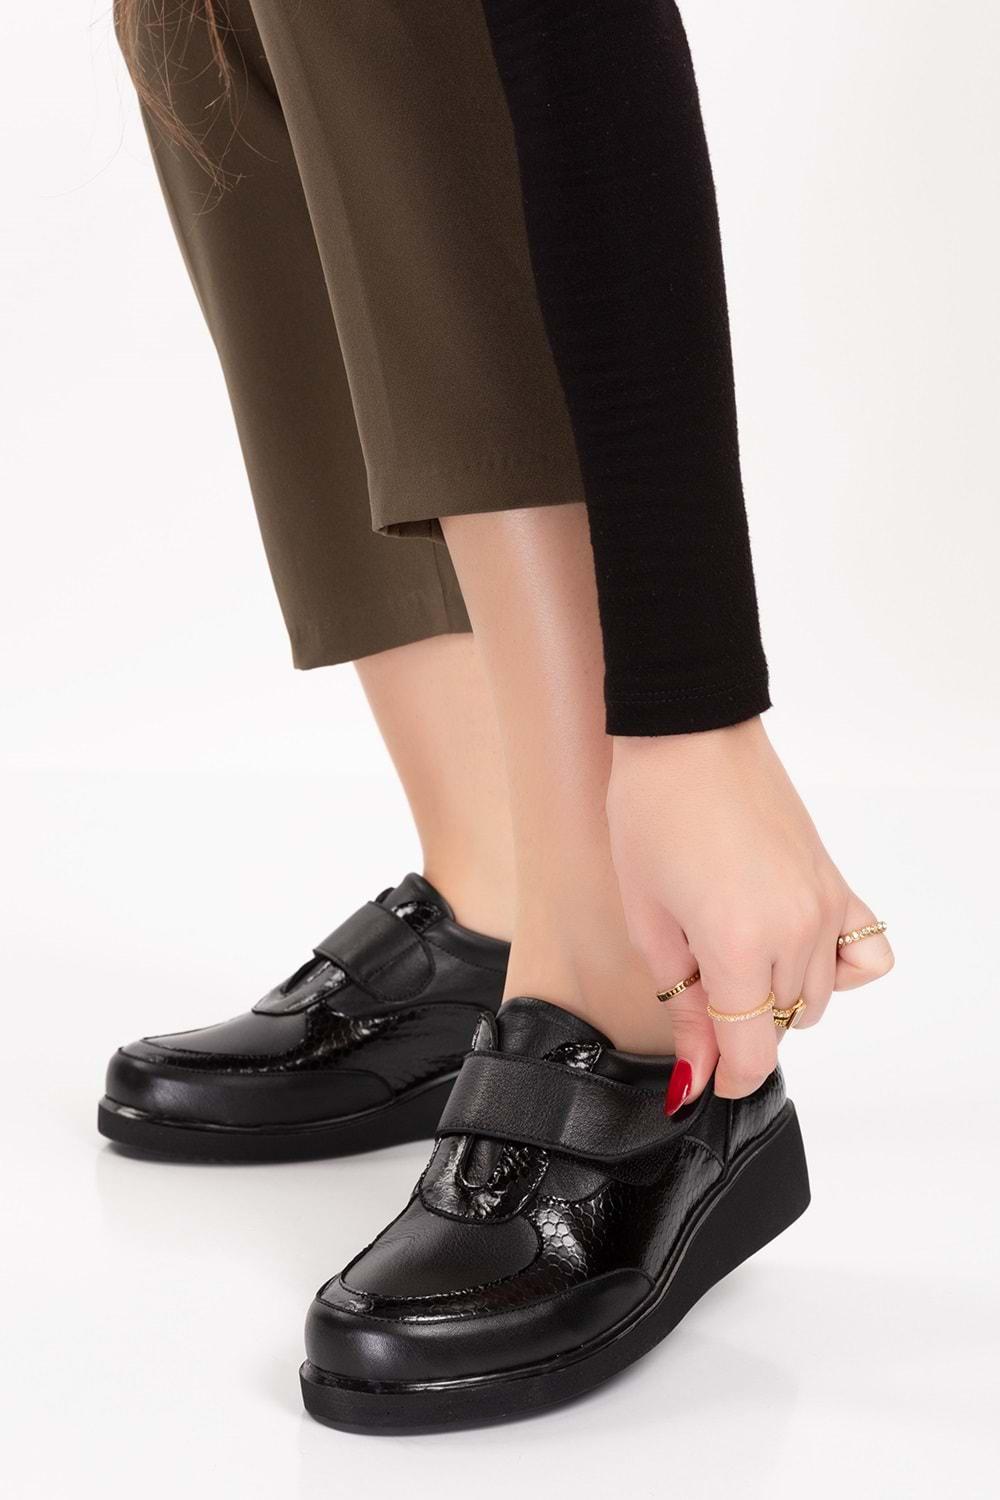 Gondol Hakiki Deri Anatomik Taban Cırtlı Kolay Giyim Ayakkabı tre.845 - Siyah - 40